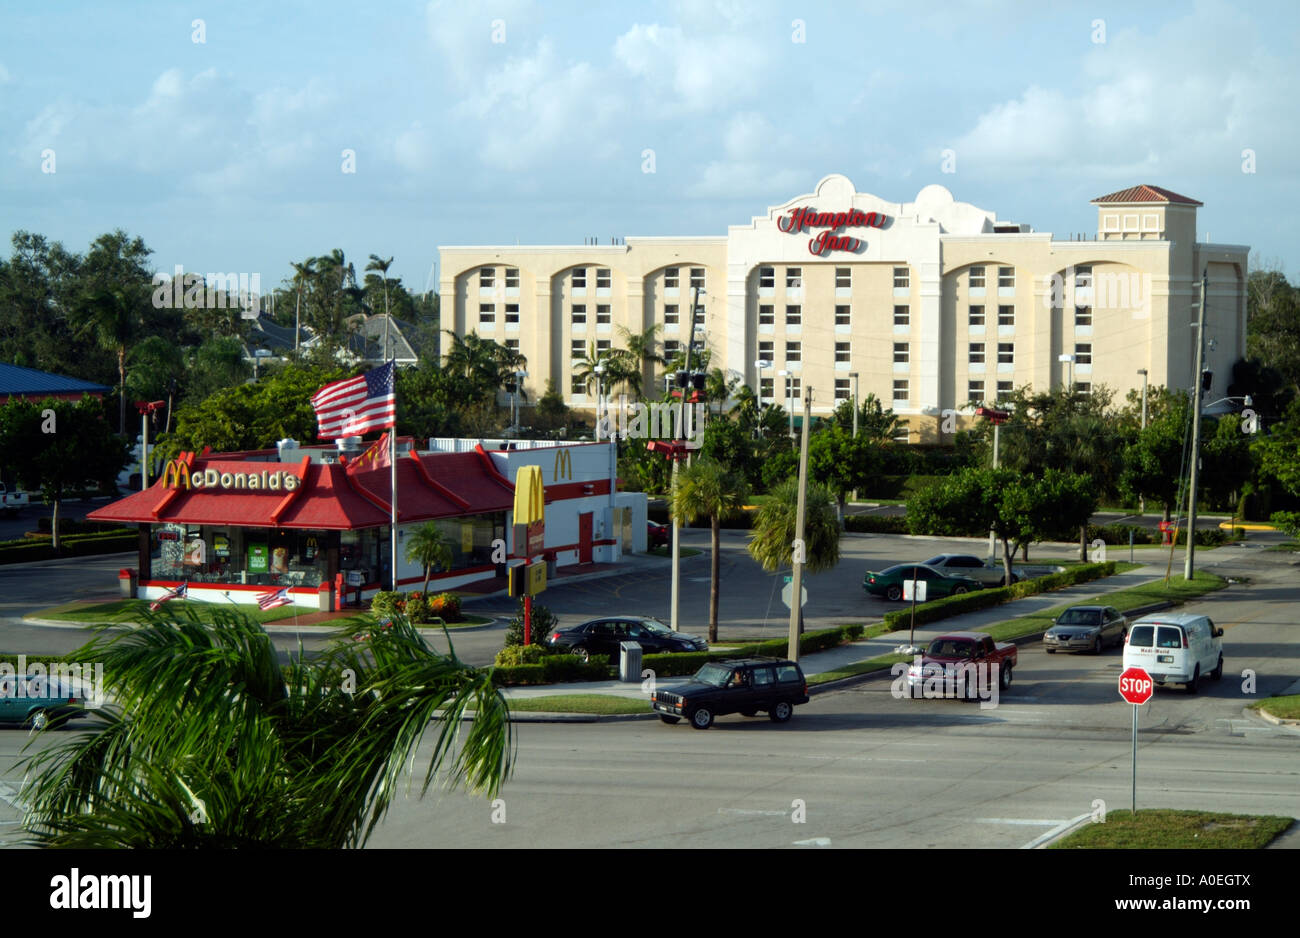 Mcdonald's restaurant fast-food et Hampton Inn. Fort Lauderdale en Floride aux États-Unis. Banque D'Images